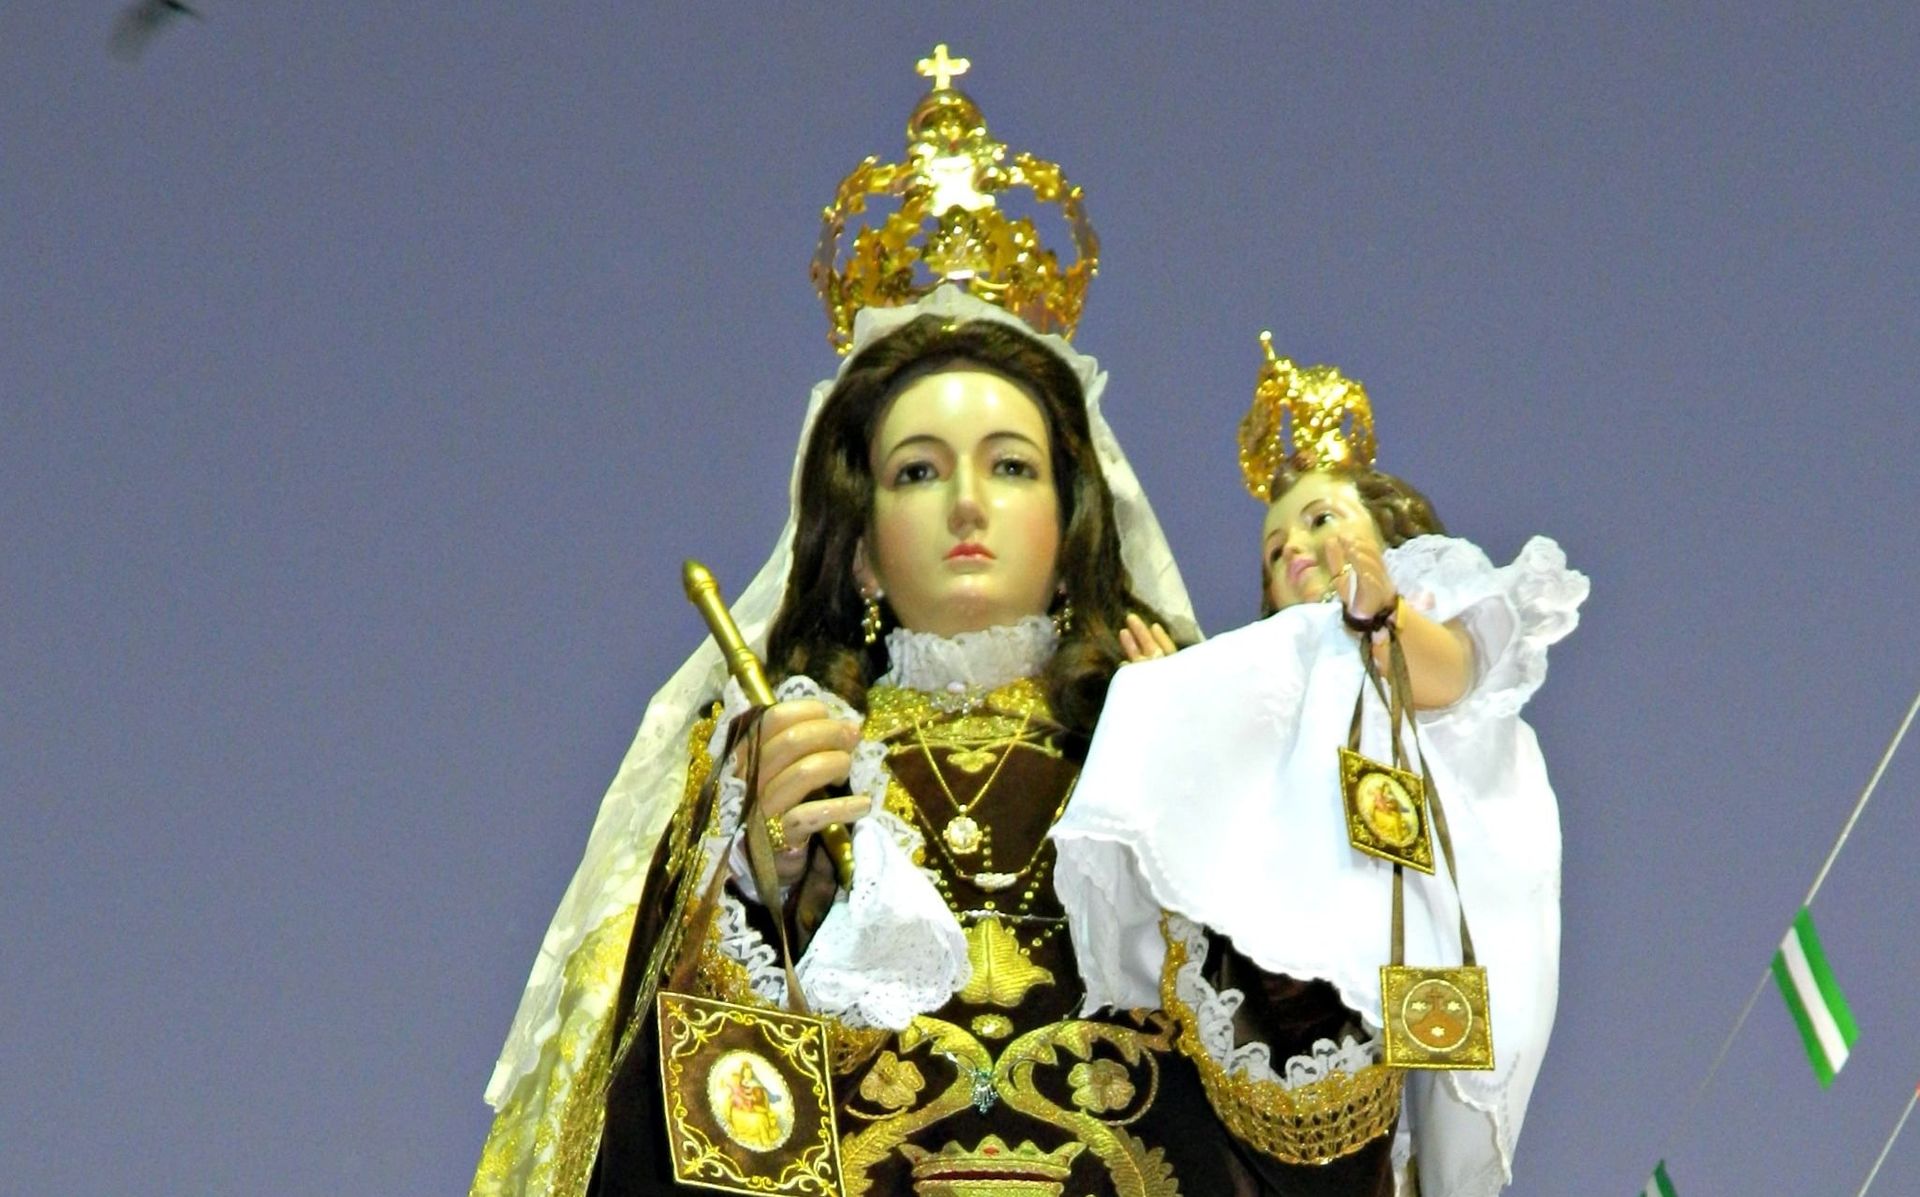 Datos curiosos sobre la Virgen del Carmen que se celebra cada 16 de julio